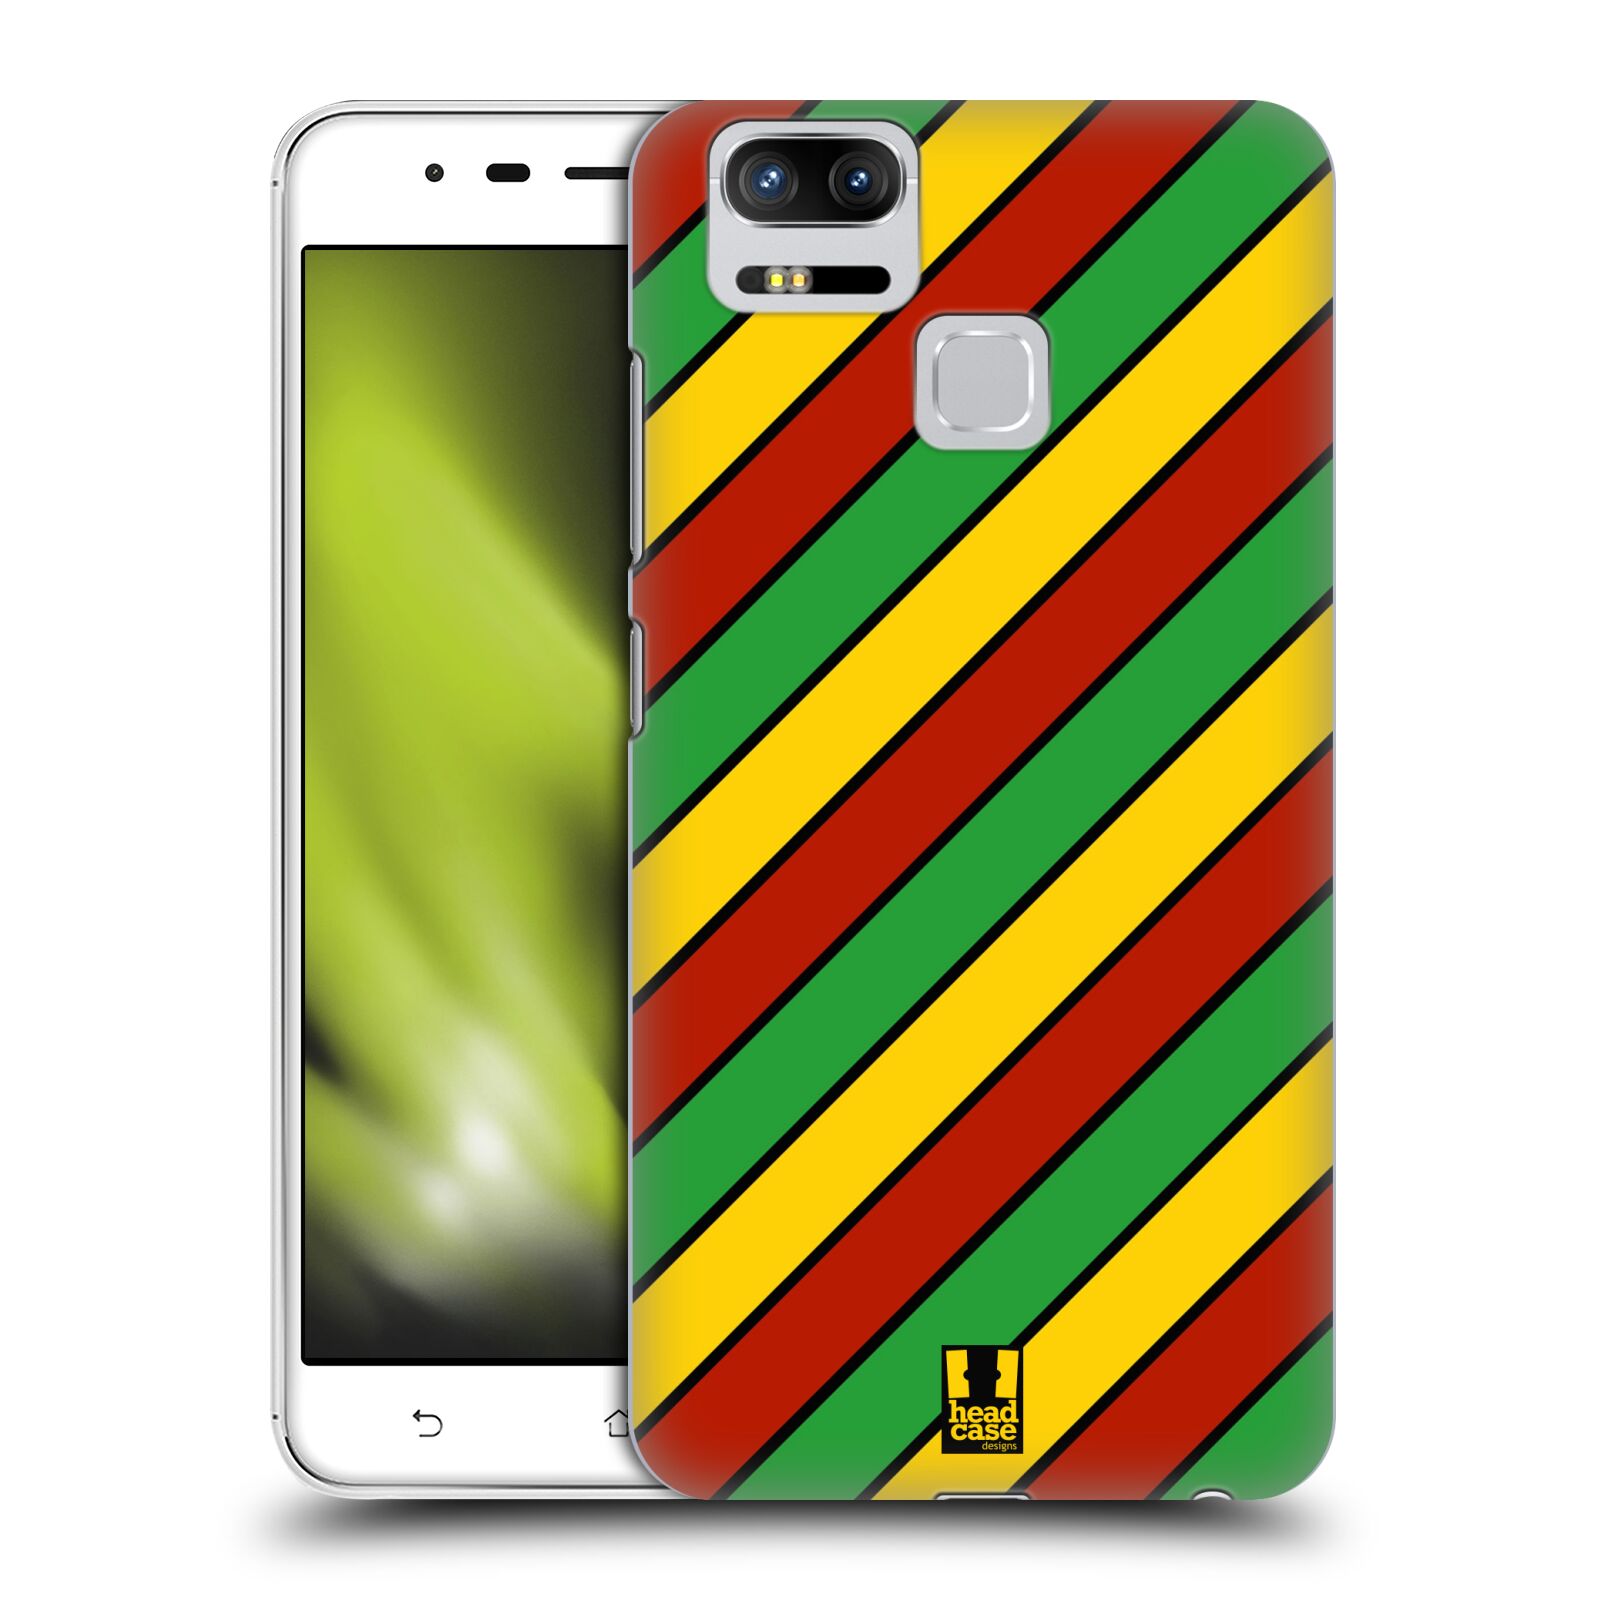 HEAD CASE plastový obal na mobil Asus Zenfone 3 Zoom ZE553KL vzor Rasta barevné vzory PRUHY